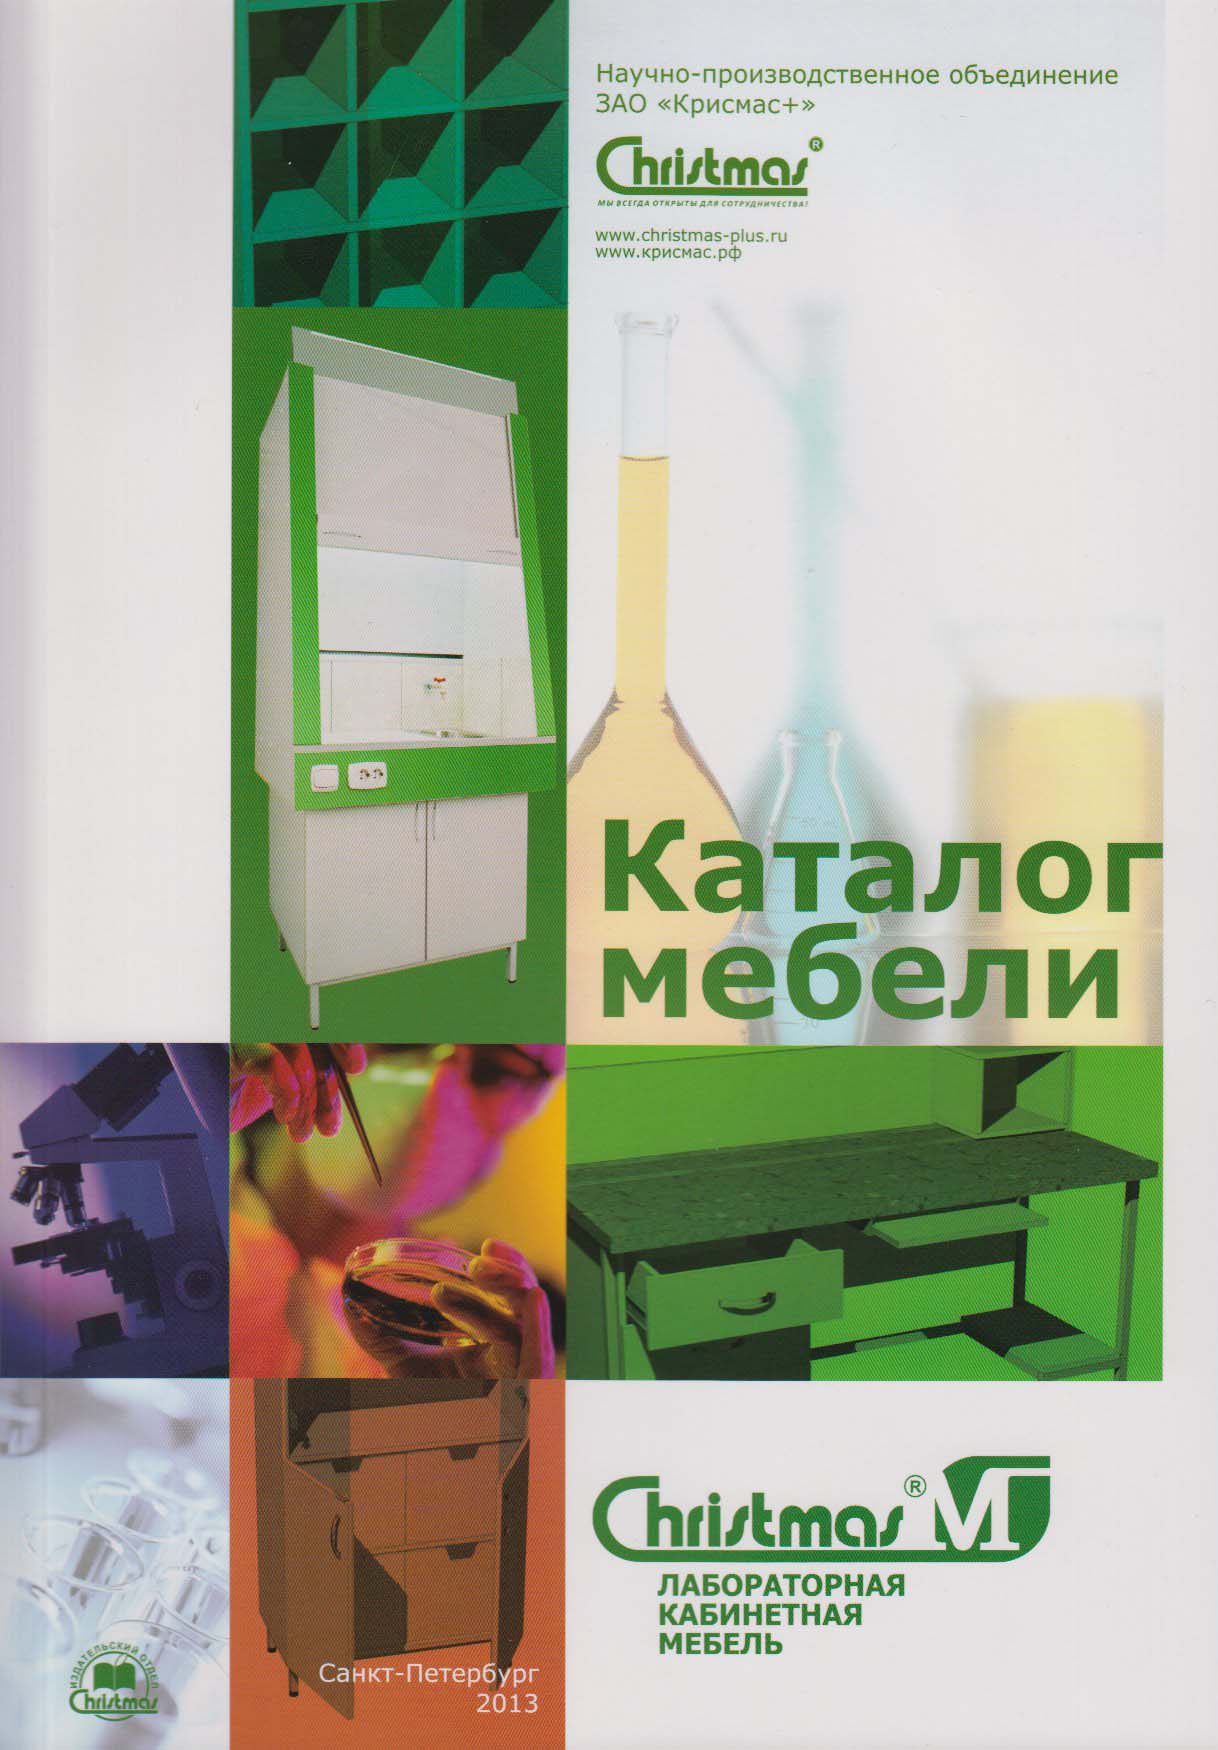 Специалистами ЗАО «Крисмас+» подготовлен и выпущен каталог лабораторной мебели